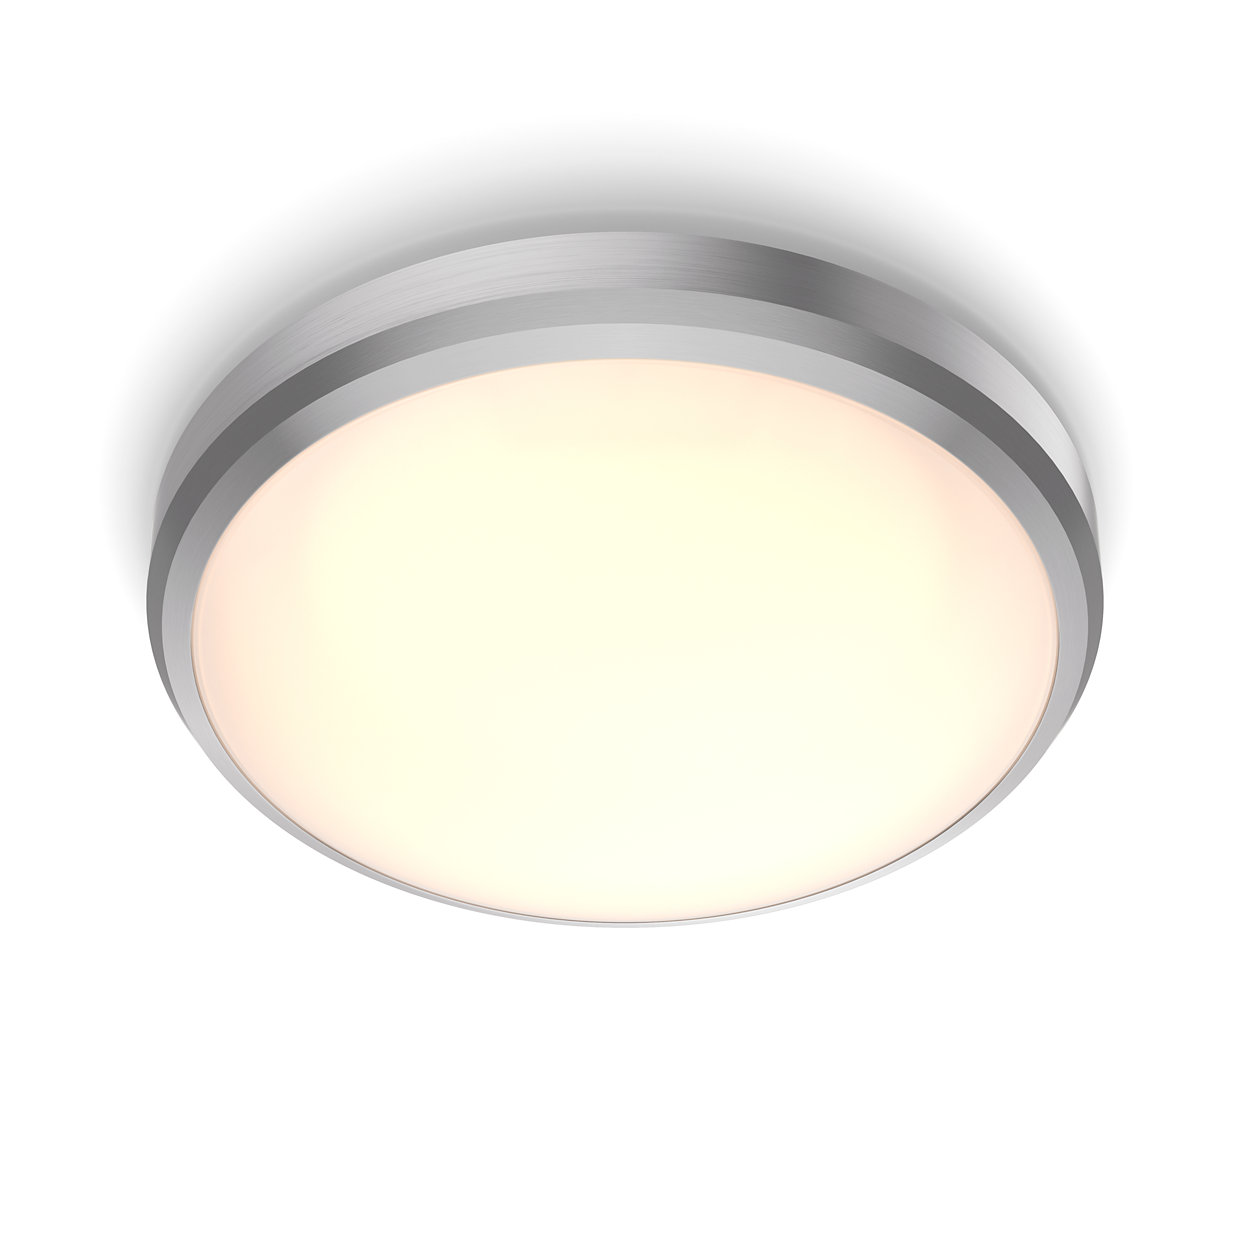 Prijetna svetloba LED, ki je prijazna do oči